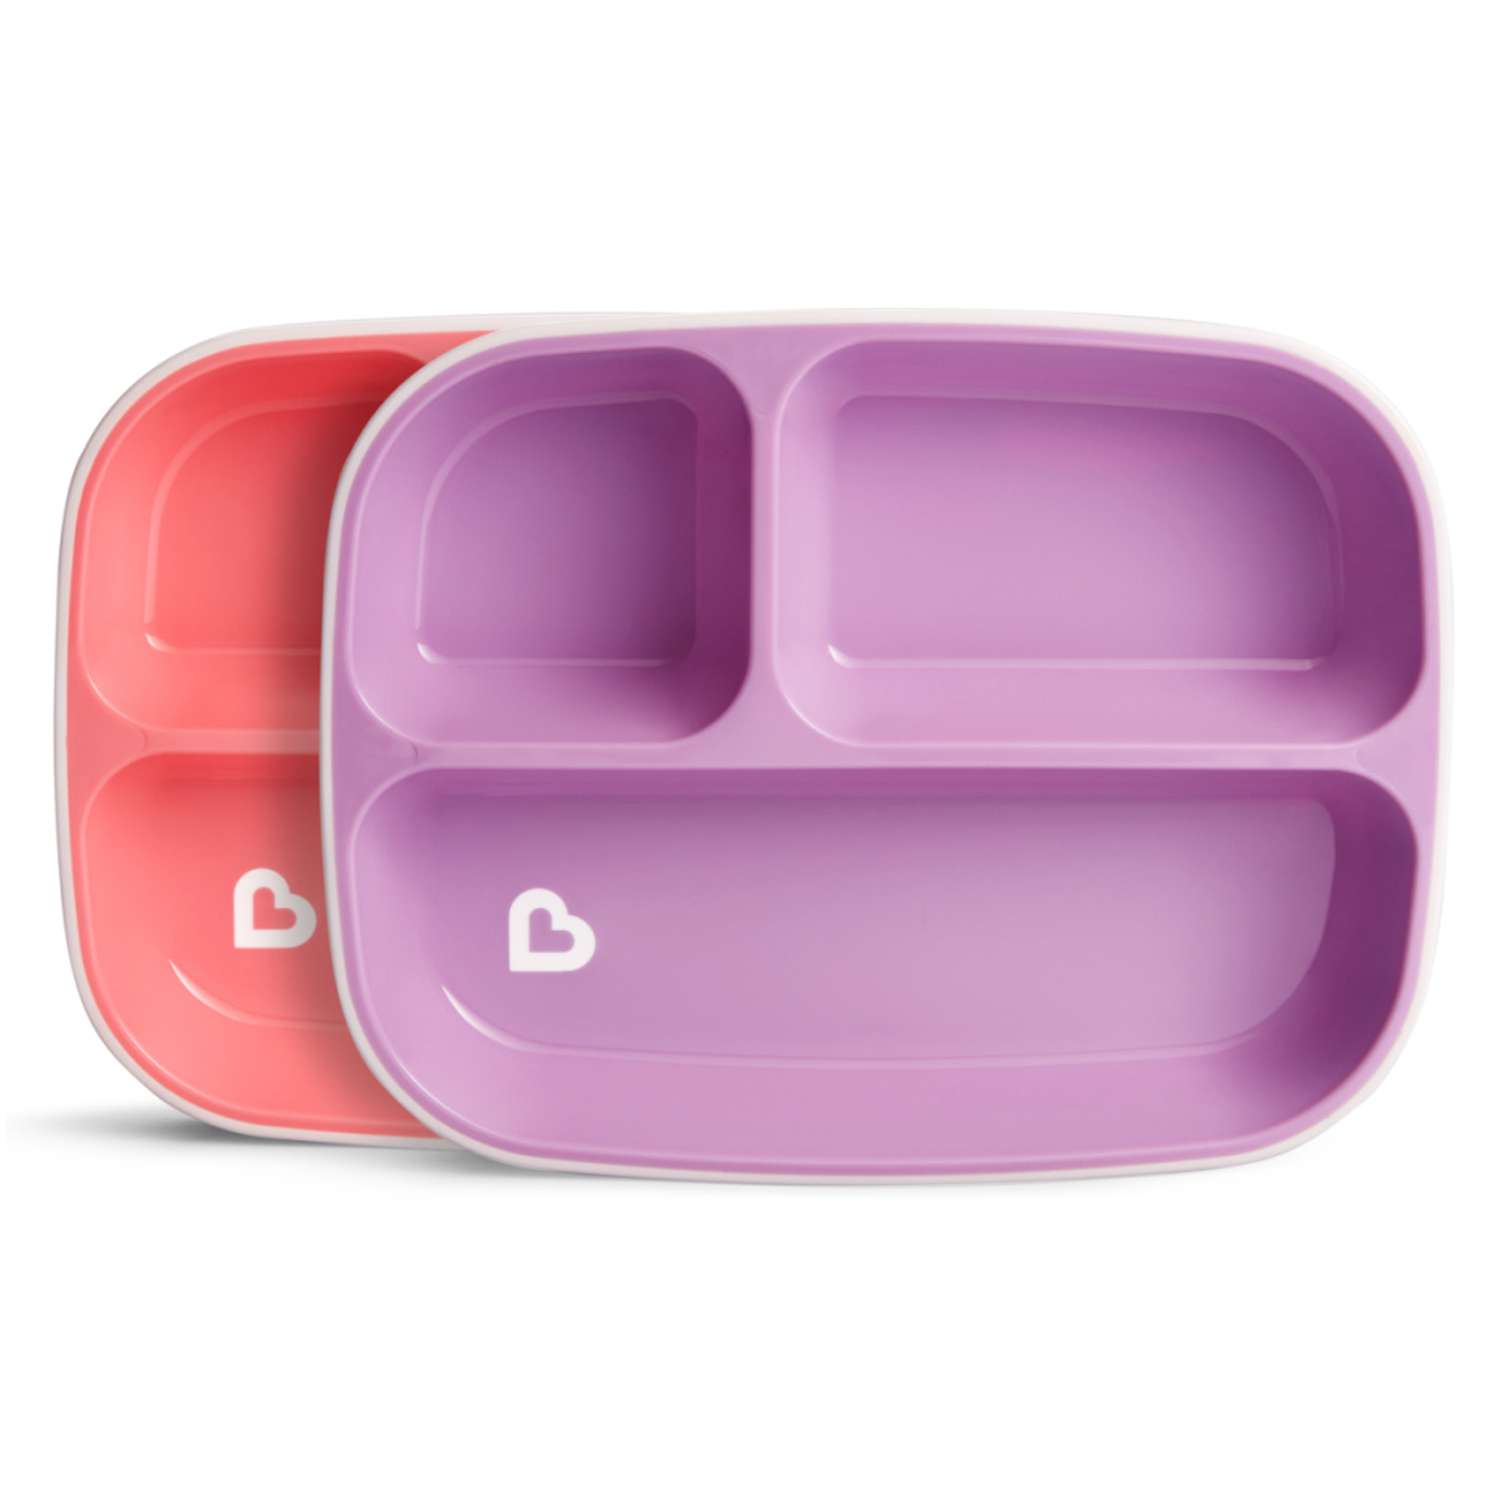 Тарелки Munchkin детские секционные Splash набор 2шт. розовая фиолетовая - фото 1